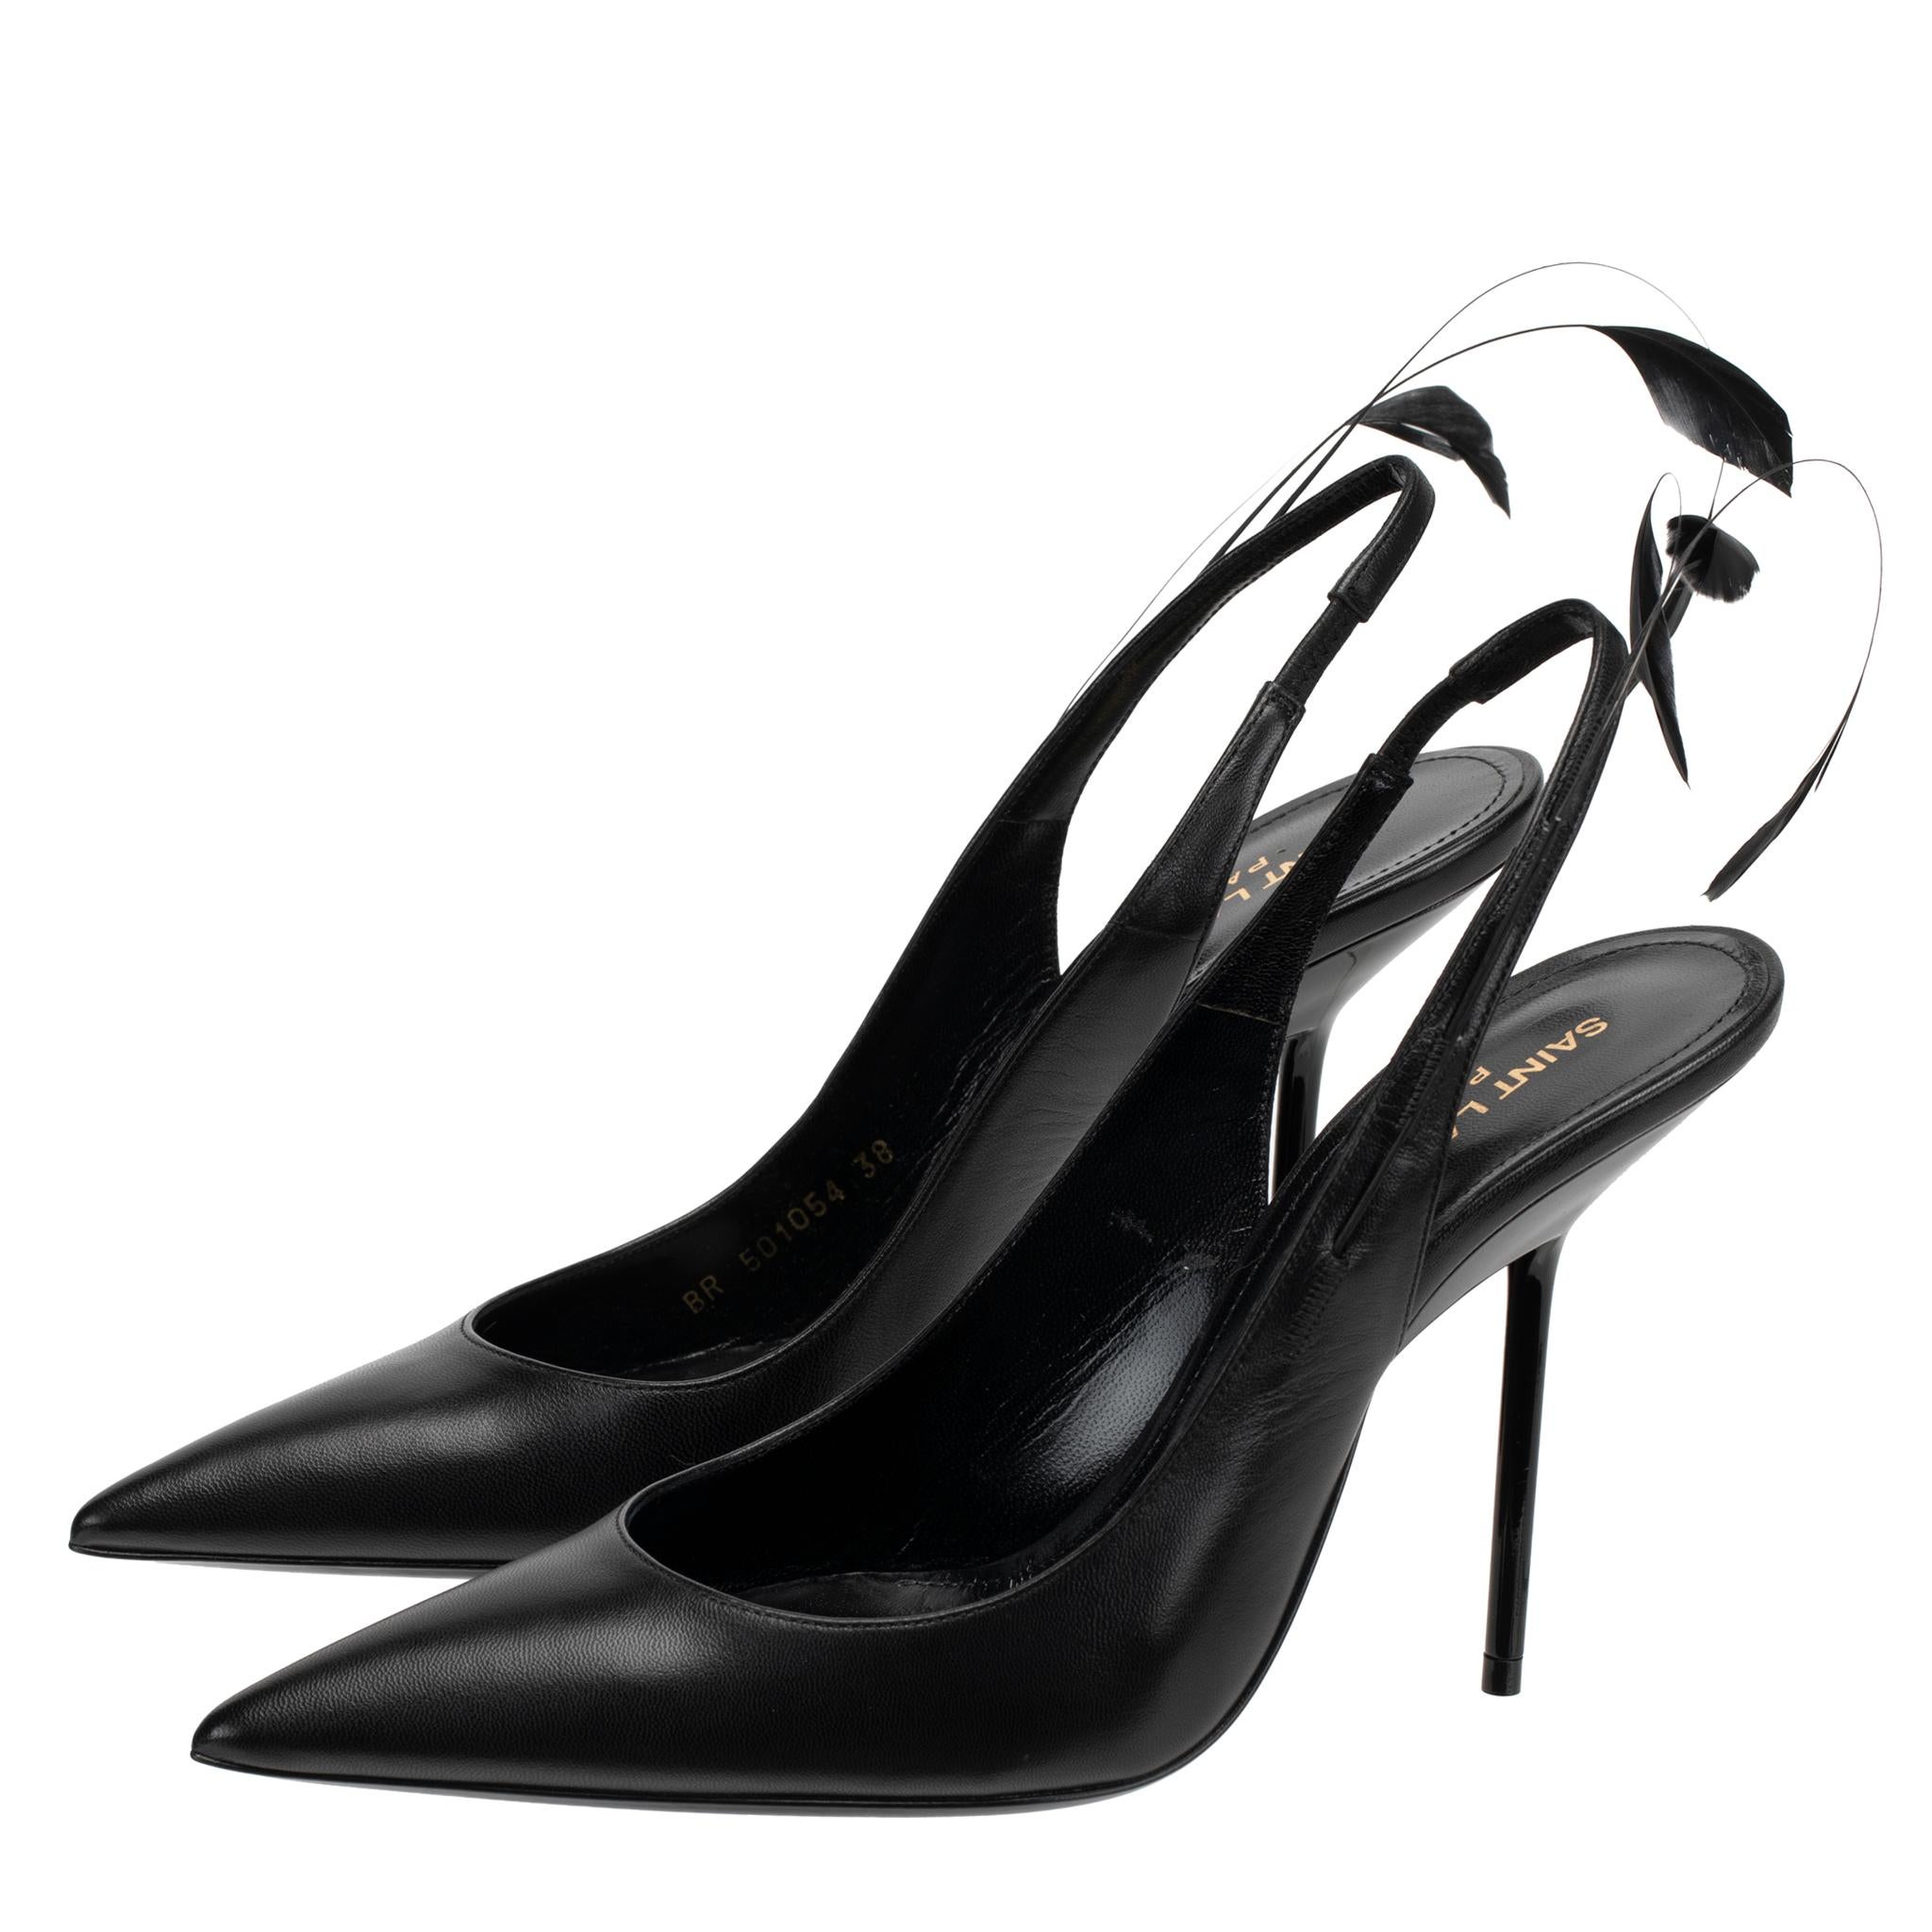 Ces luxueux escarpins à talon aiguille Yves Saint Laurent sont en cuir lisse noir et ornés de plumes, parfaits pour créer un look séduisant et sophistiqué. La matière en cuir haut de gamme garantit une utilisation à long terme, tandis que le détail